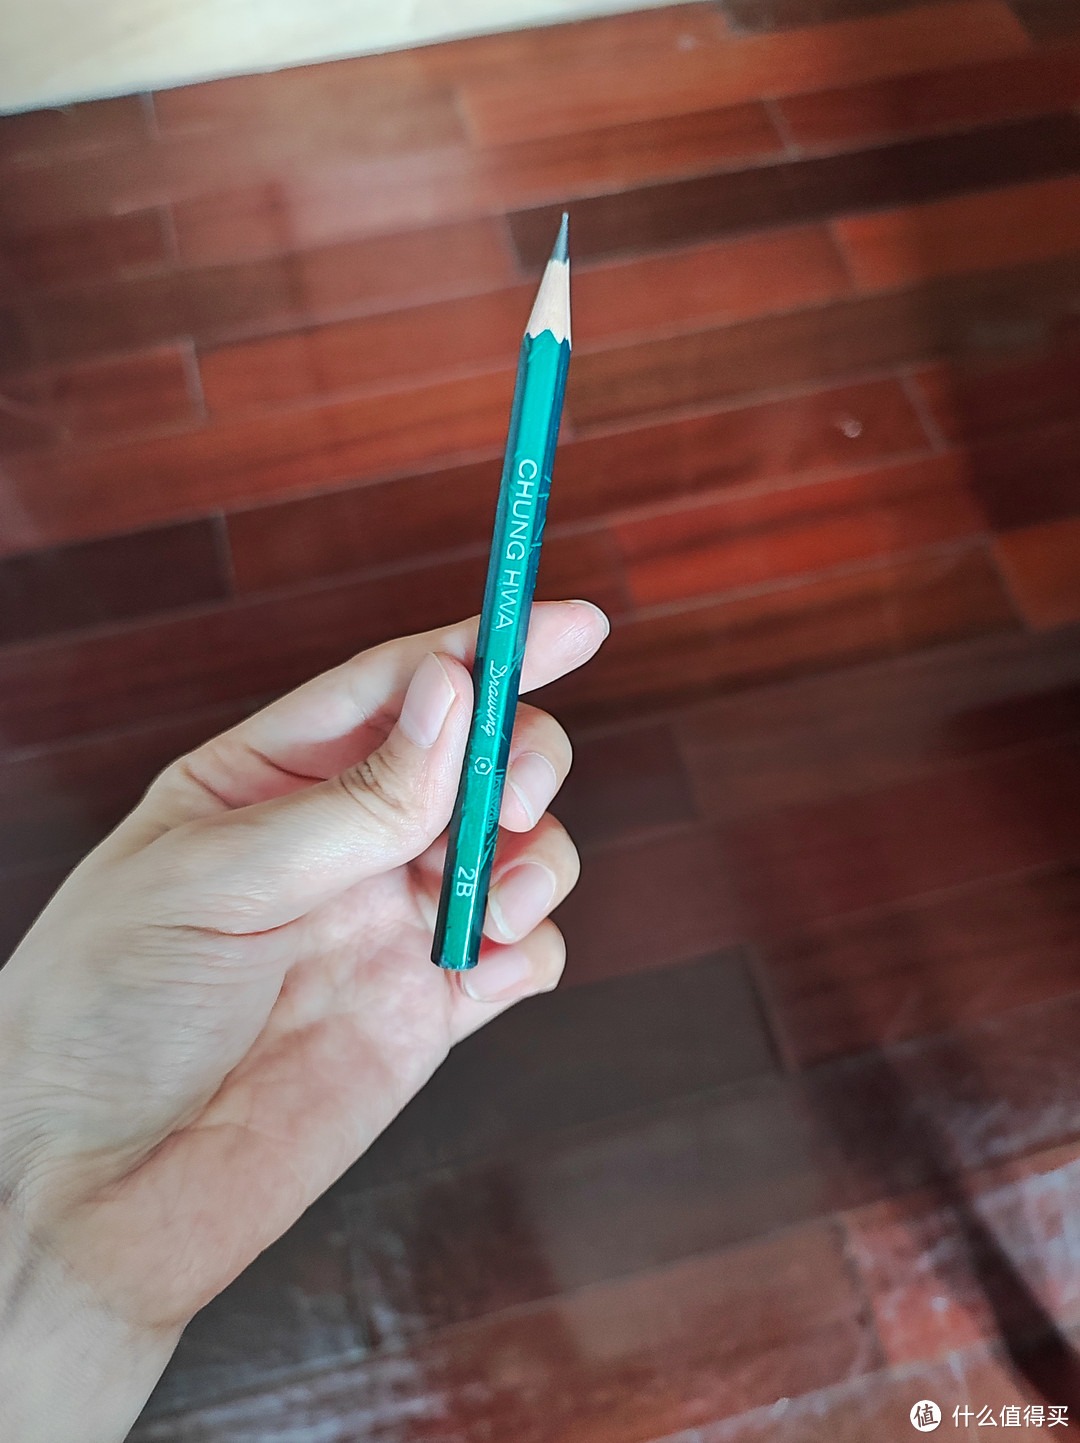 从一代人用到下一代人的老牌铅笔